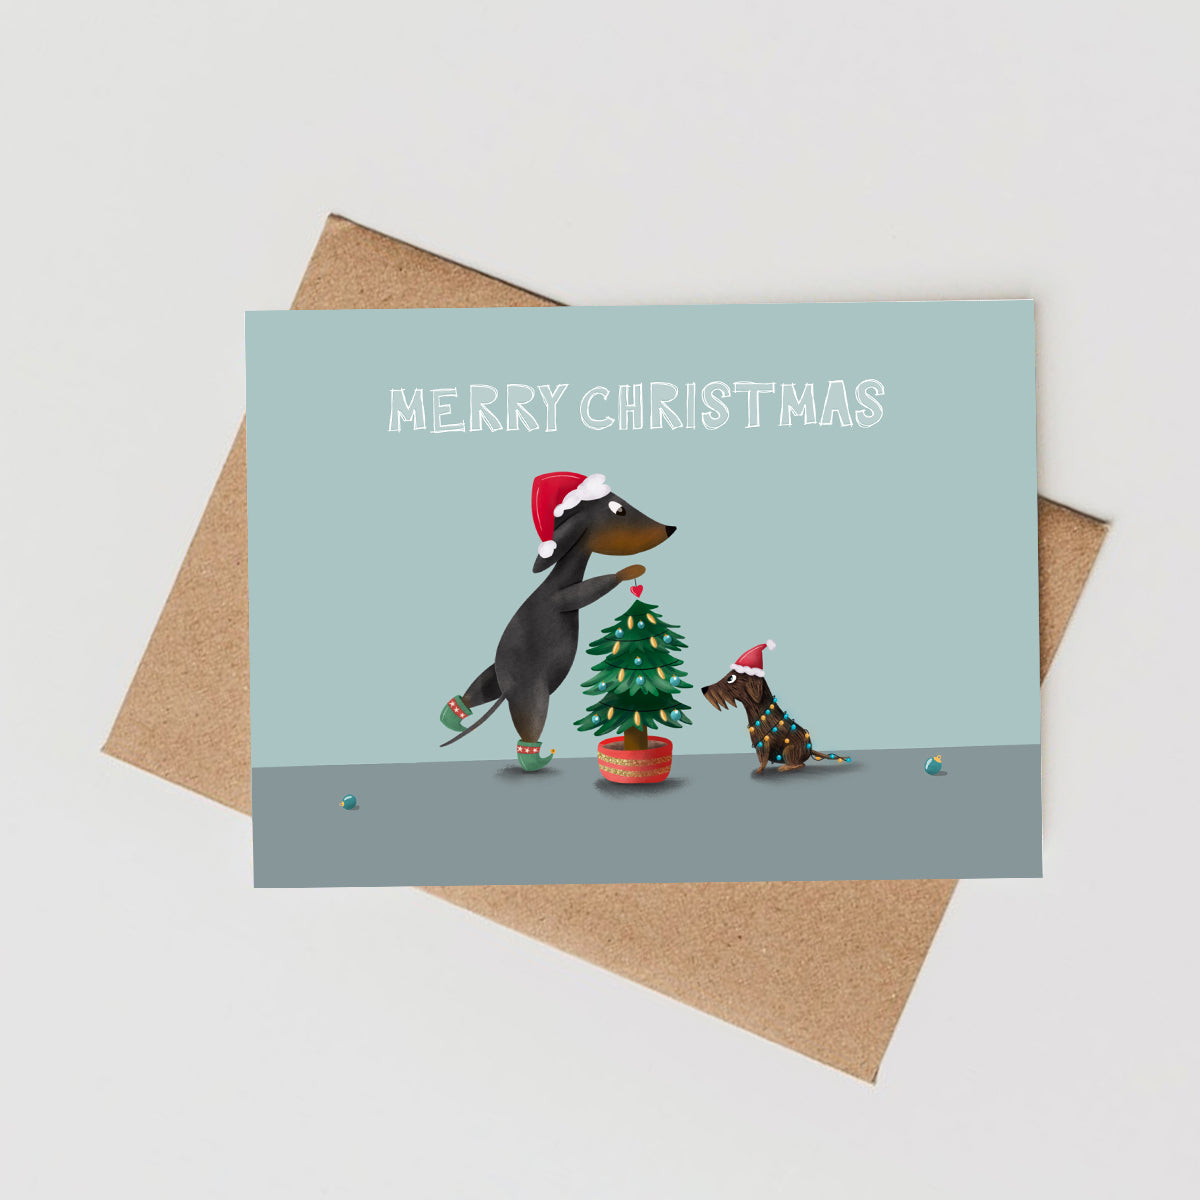 Christmas Card "Merry Christmas"